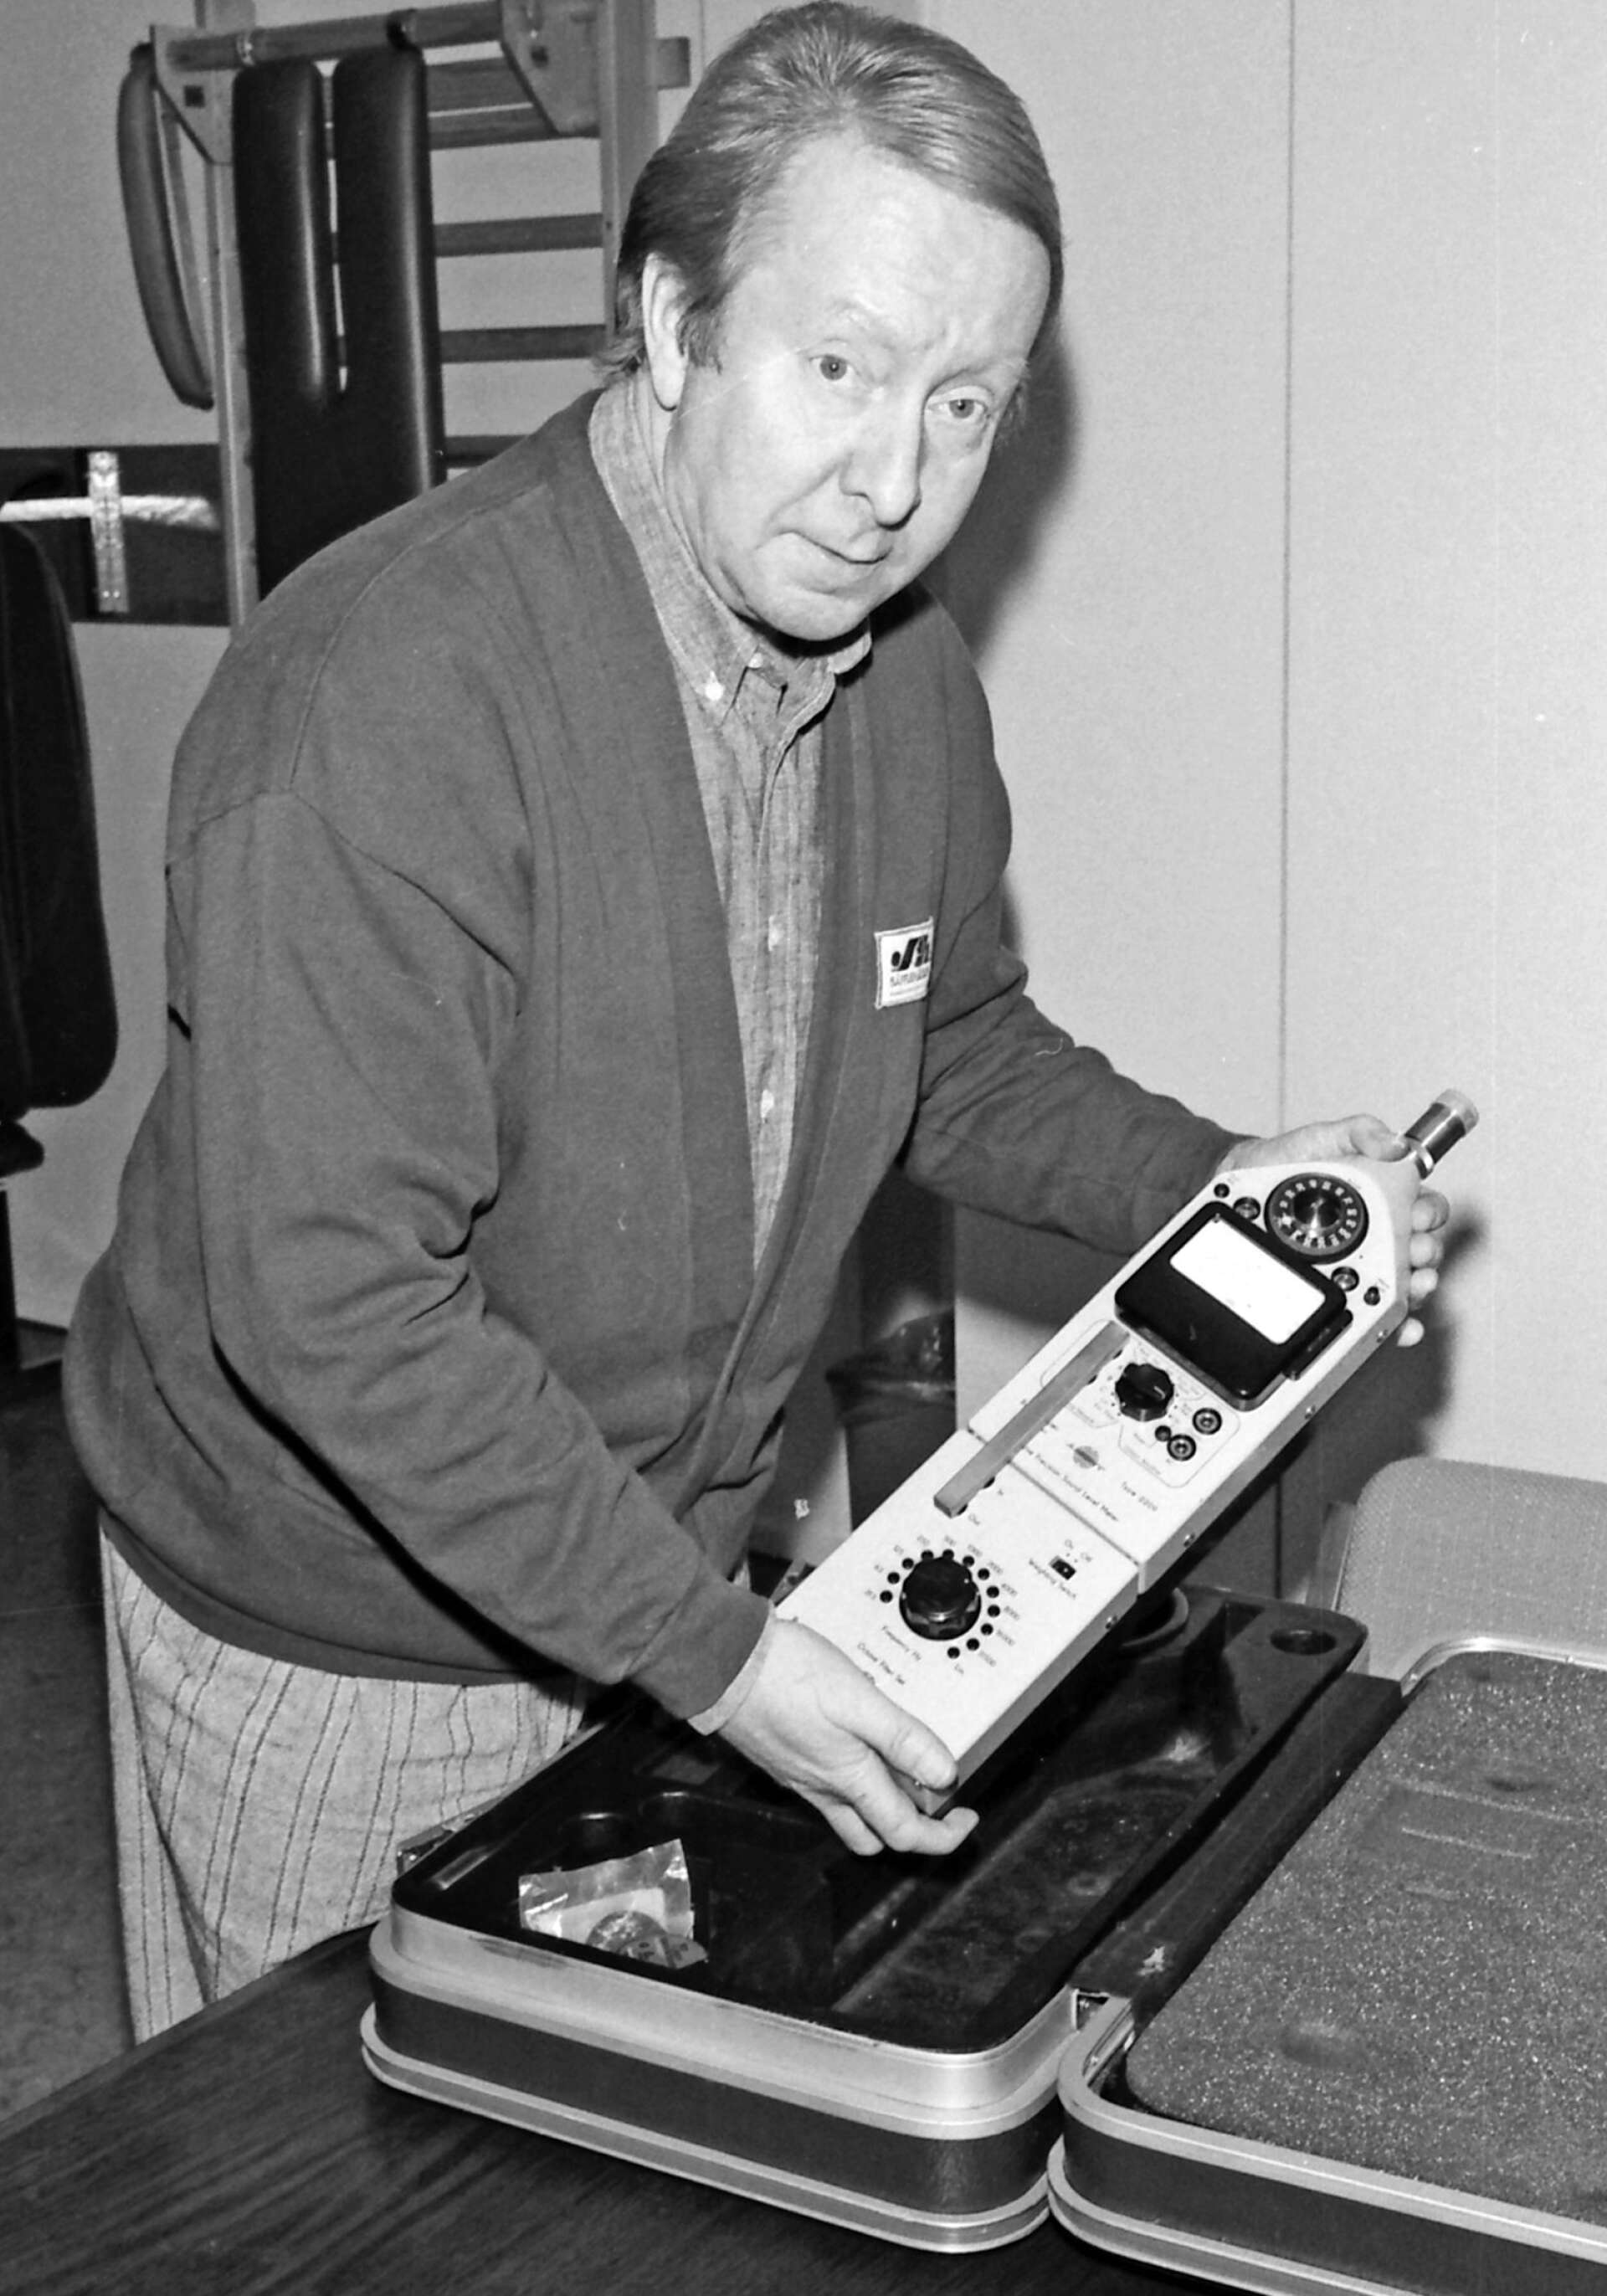 Skyddsingenjör Olof Bäckström visade 1988 upp denna ljudmätare, som då ingick i Säfflehälsans tekniska utrustning.